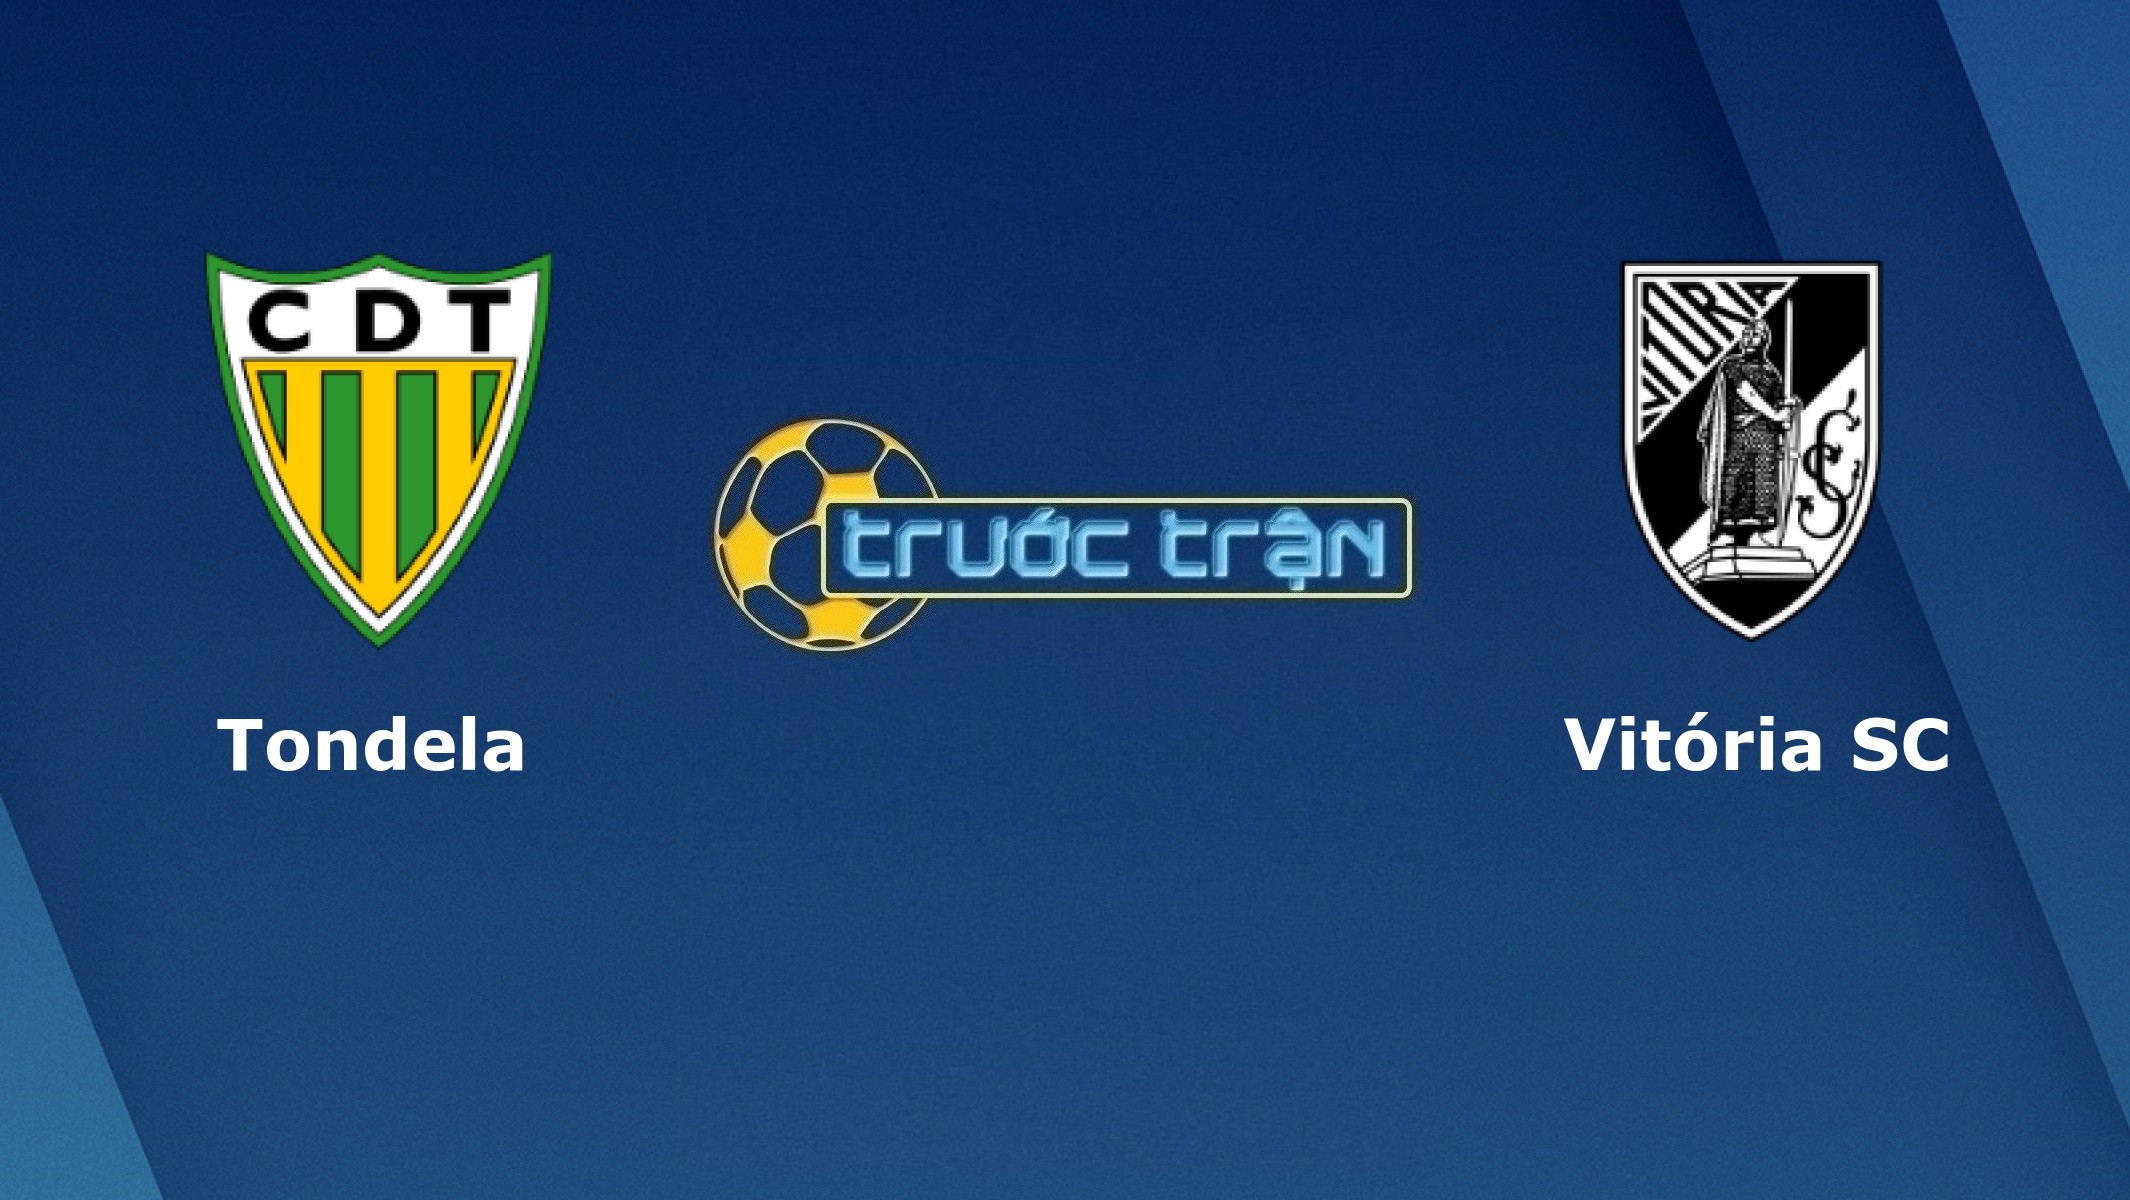 CD Tondela vs Vitoria Guimaraes – Tip kèo bóng đá hôm nay – 04h00 28/11/2020